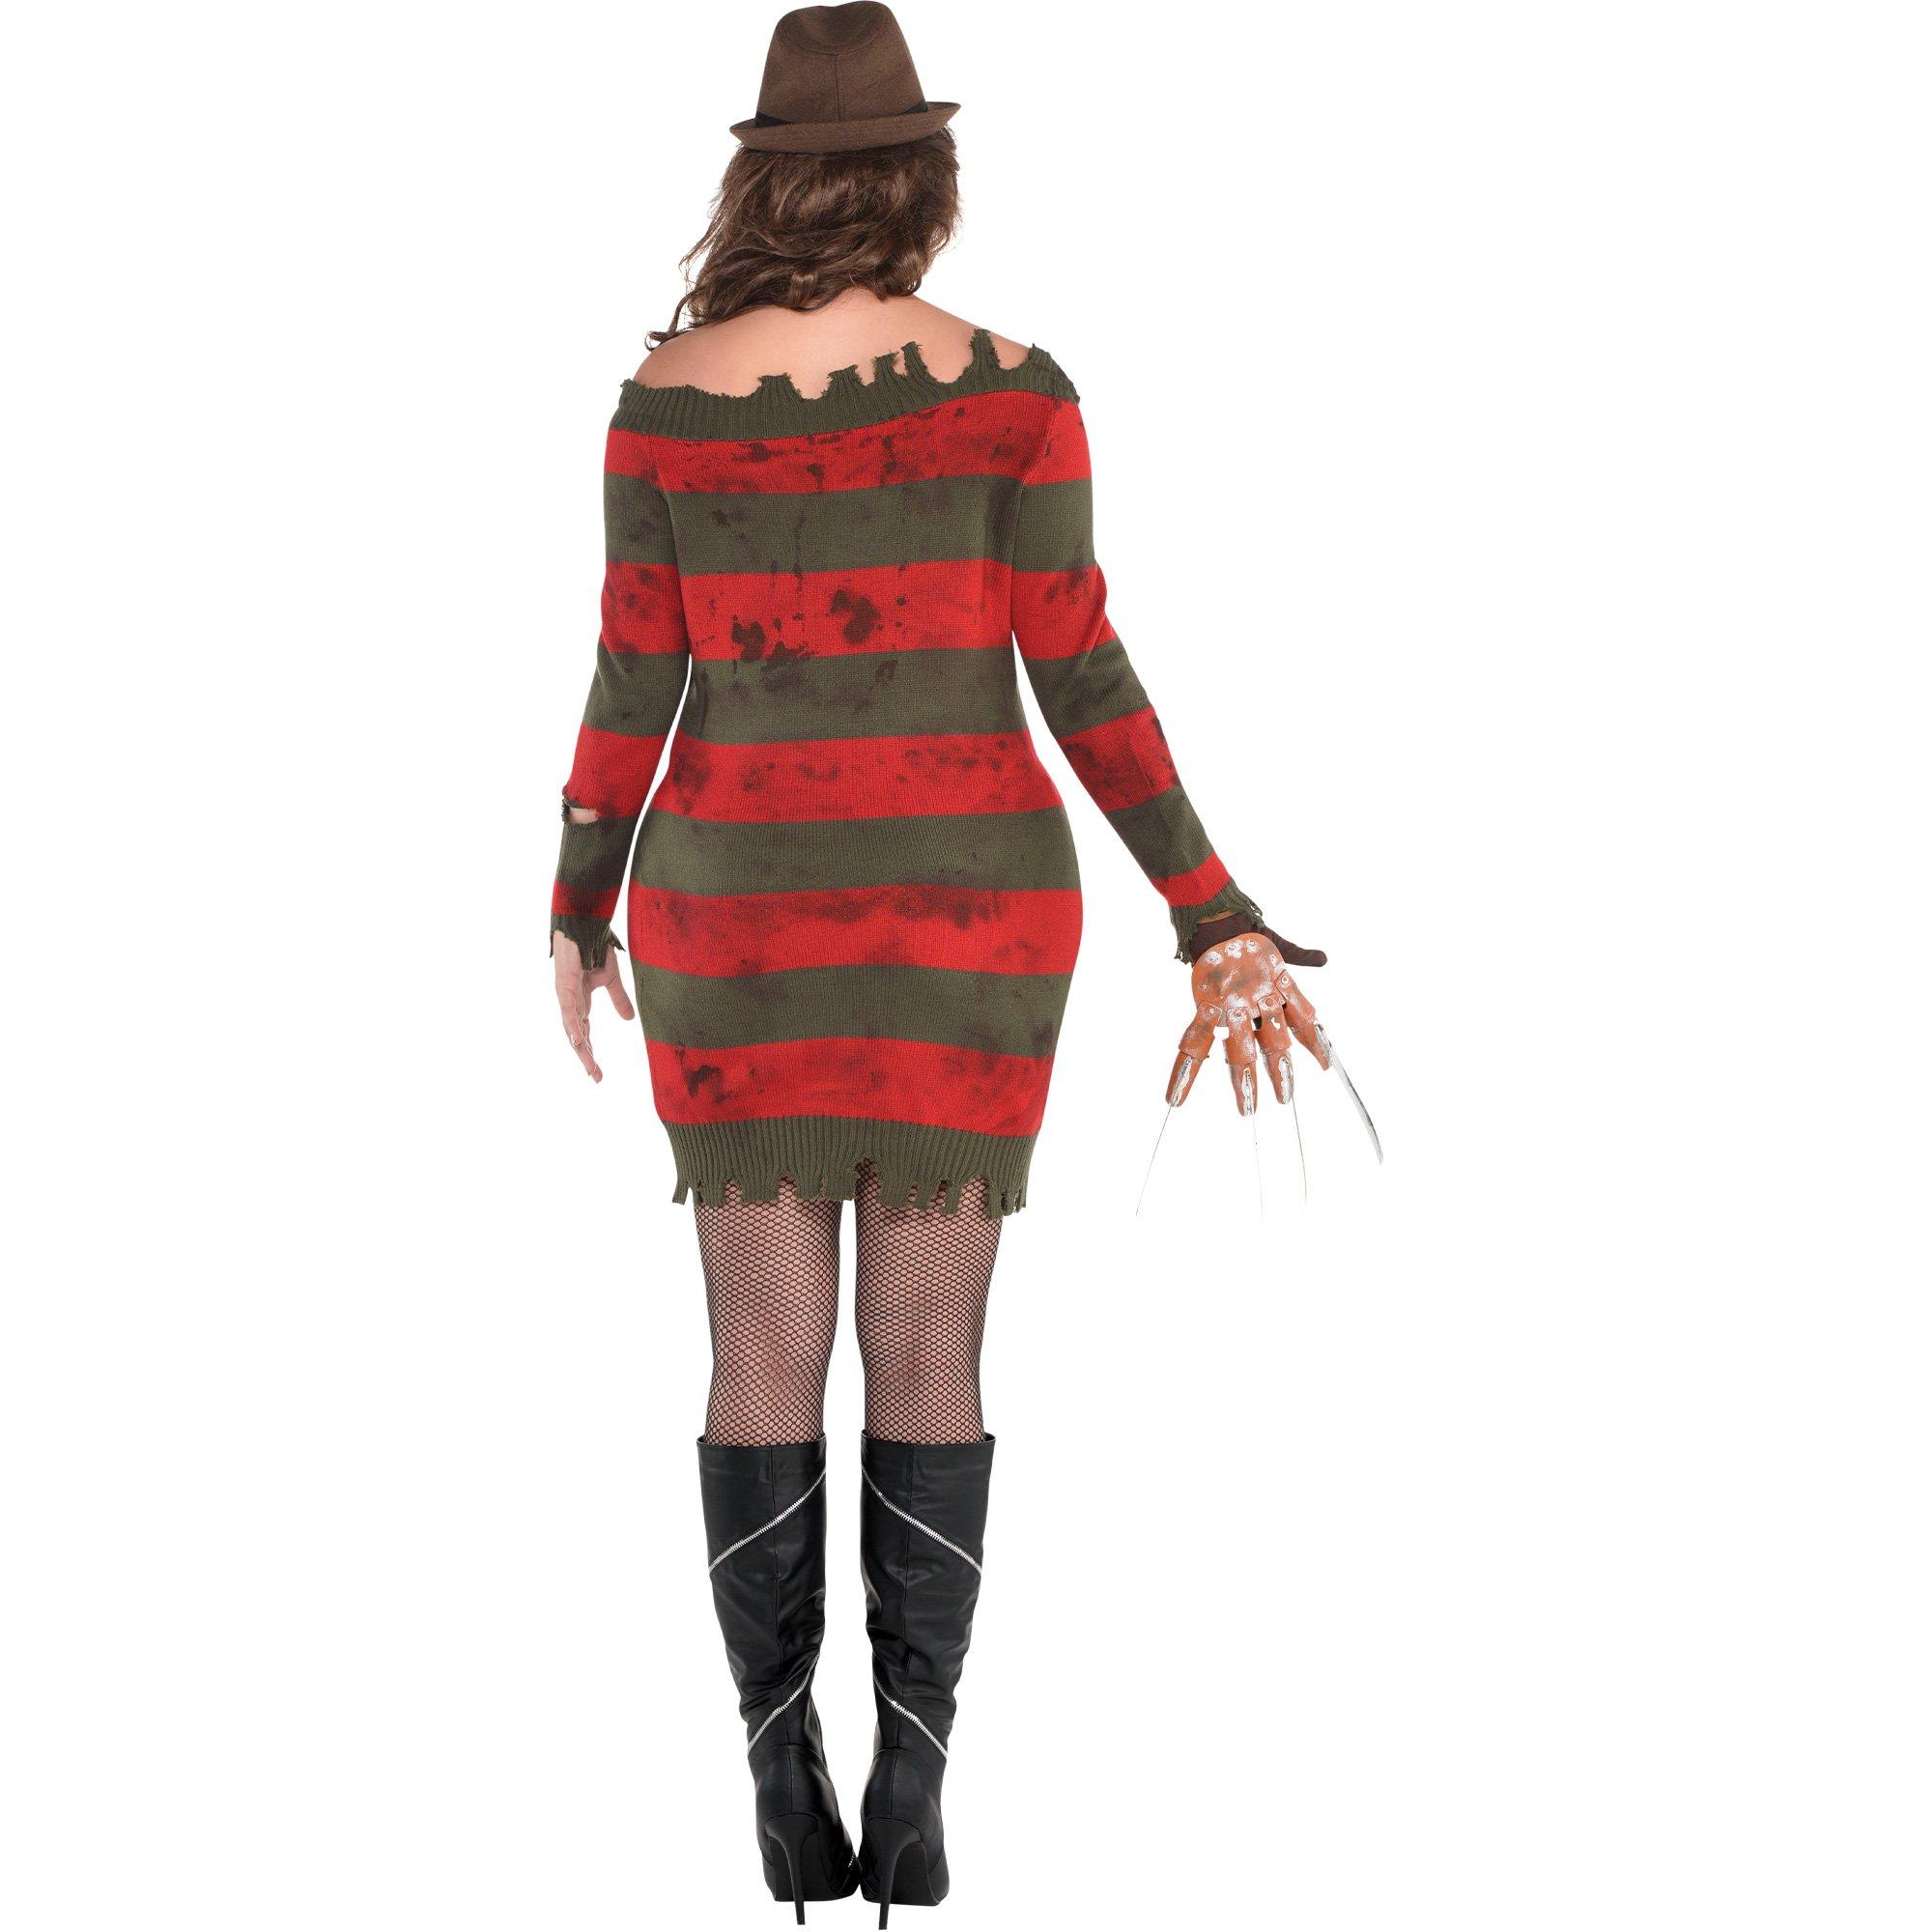 Adult Miss Krueger Costume Plus Size - A Nightmare on Elm Street